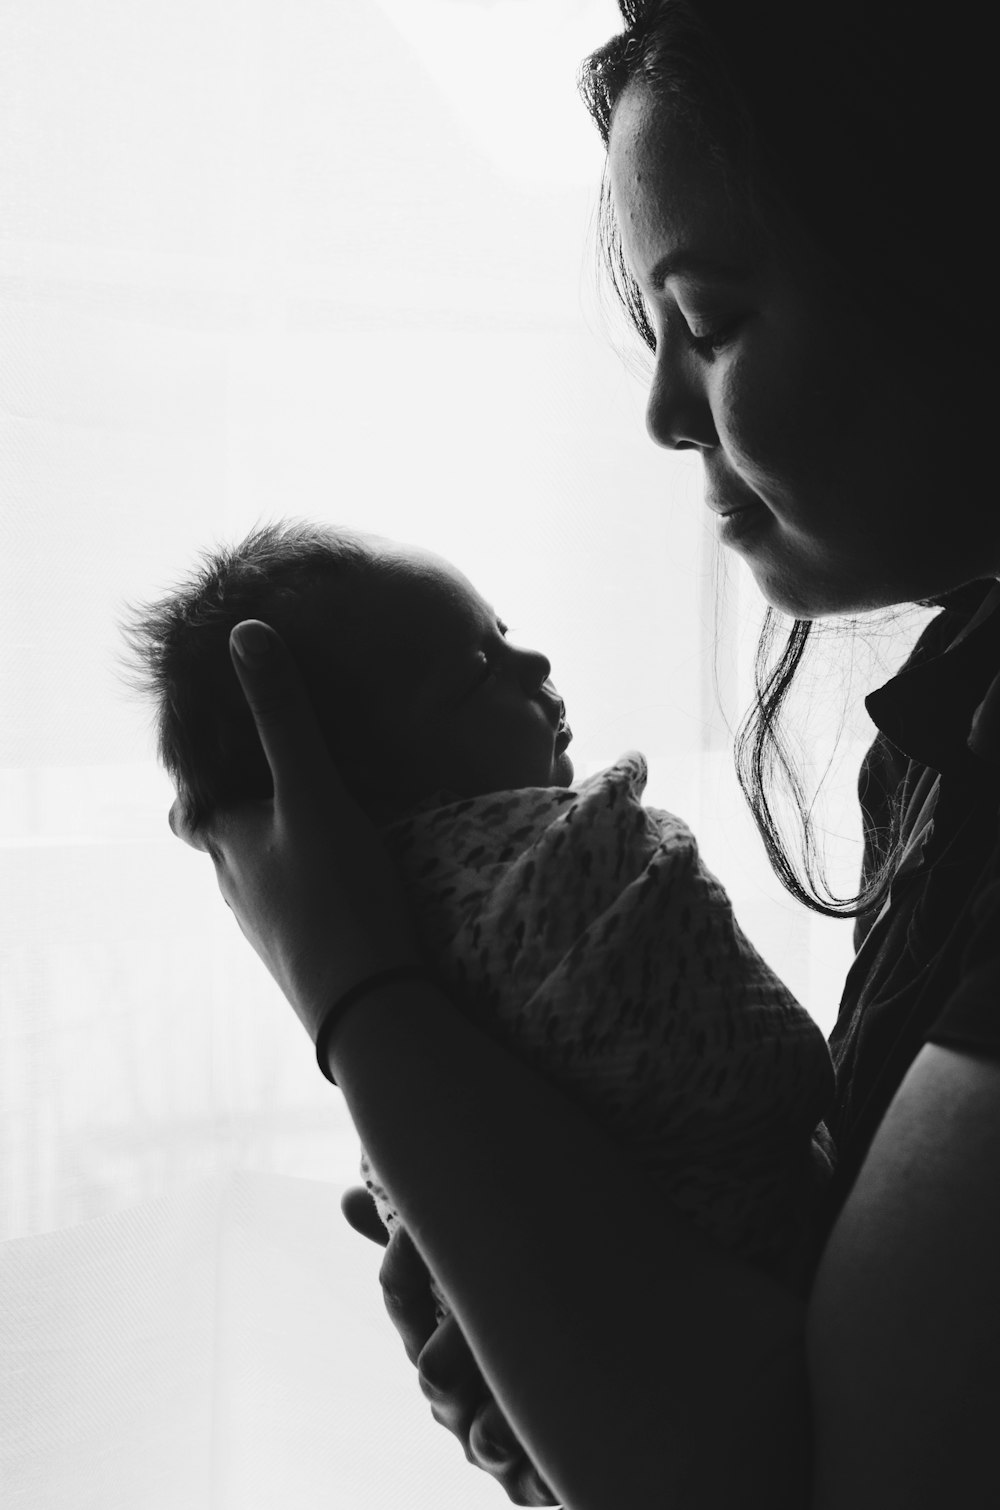 fotografia in scala di grigi di una donna che porta un bambino